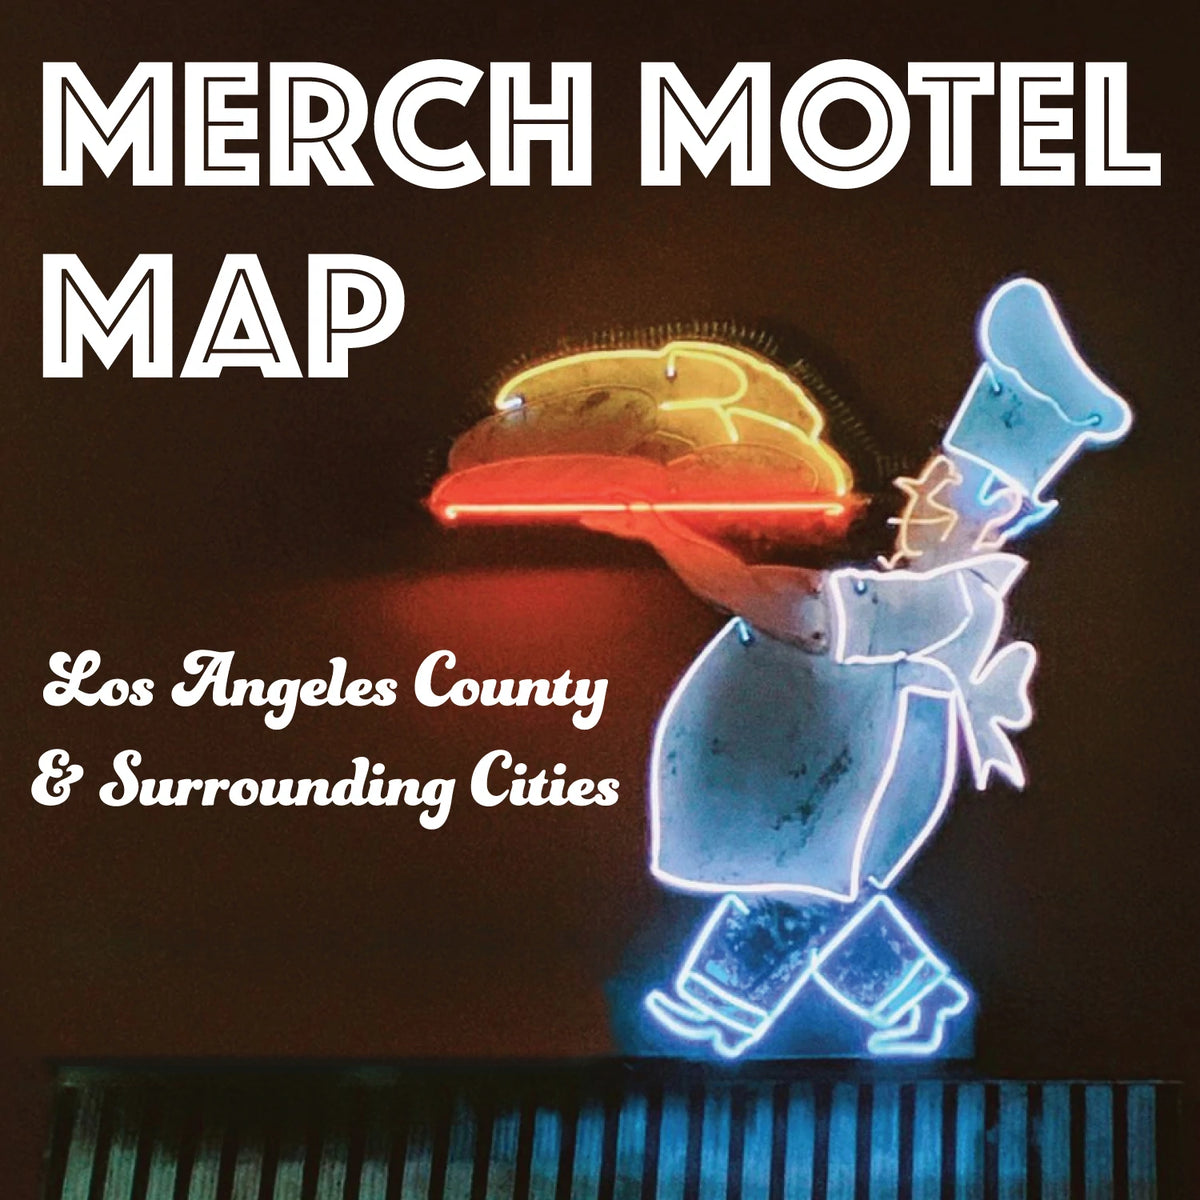 Merch Motel Map Promo1 1200x1200.webp?v=1655424081